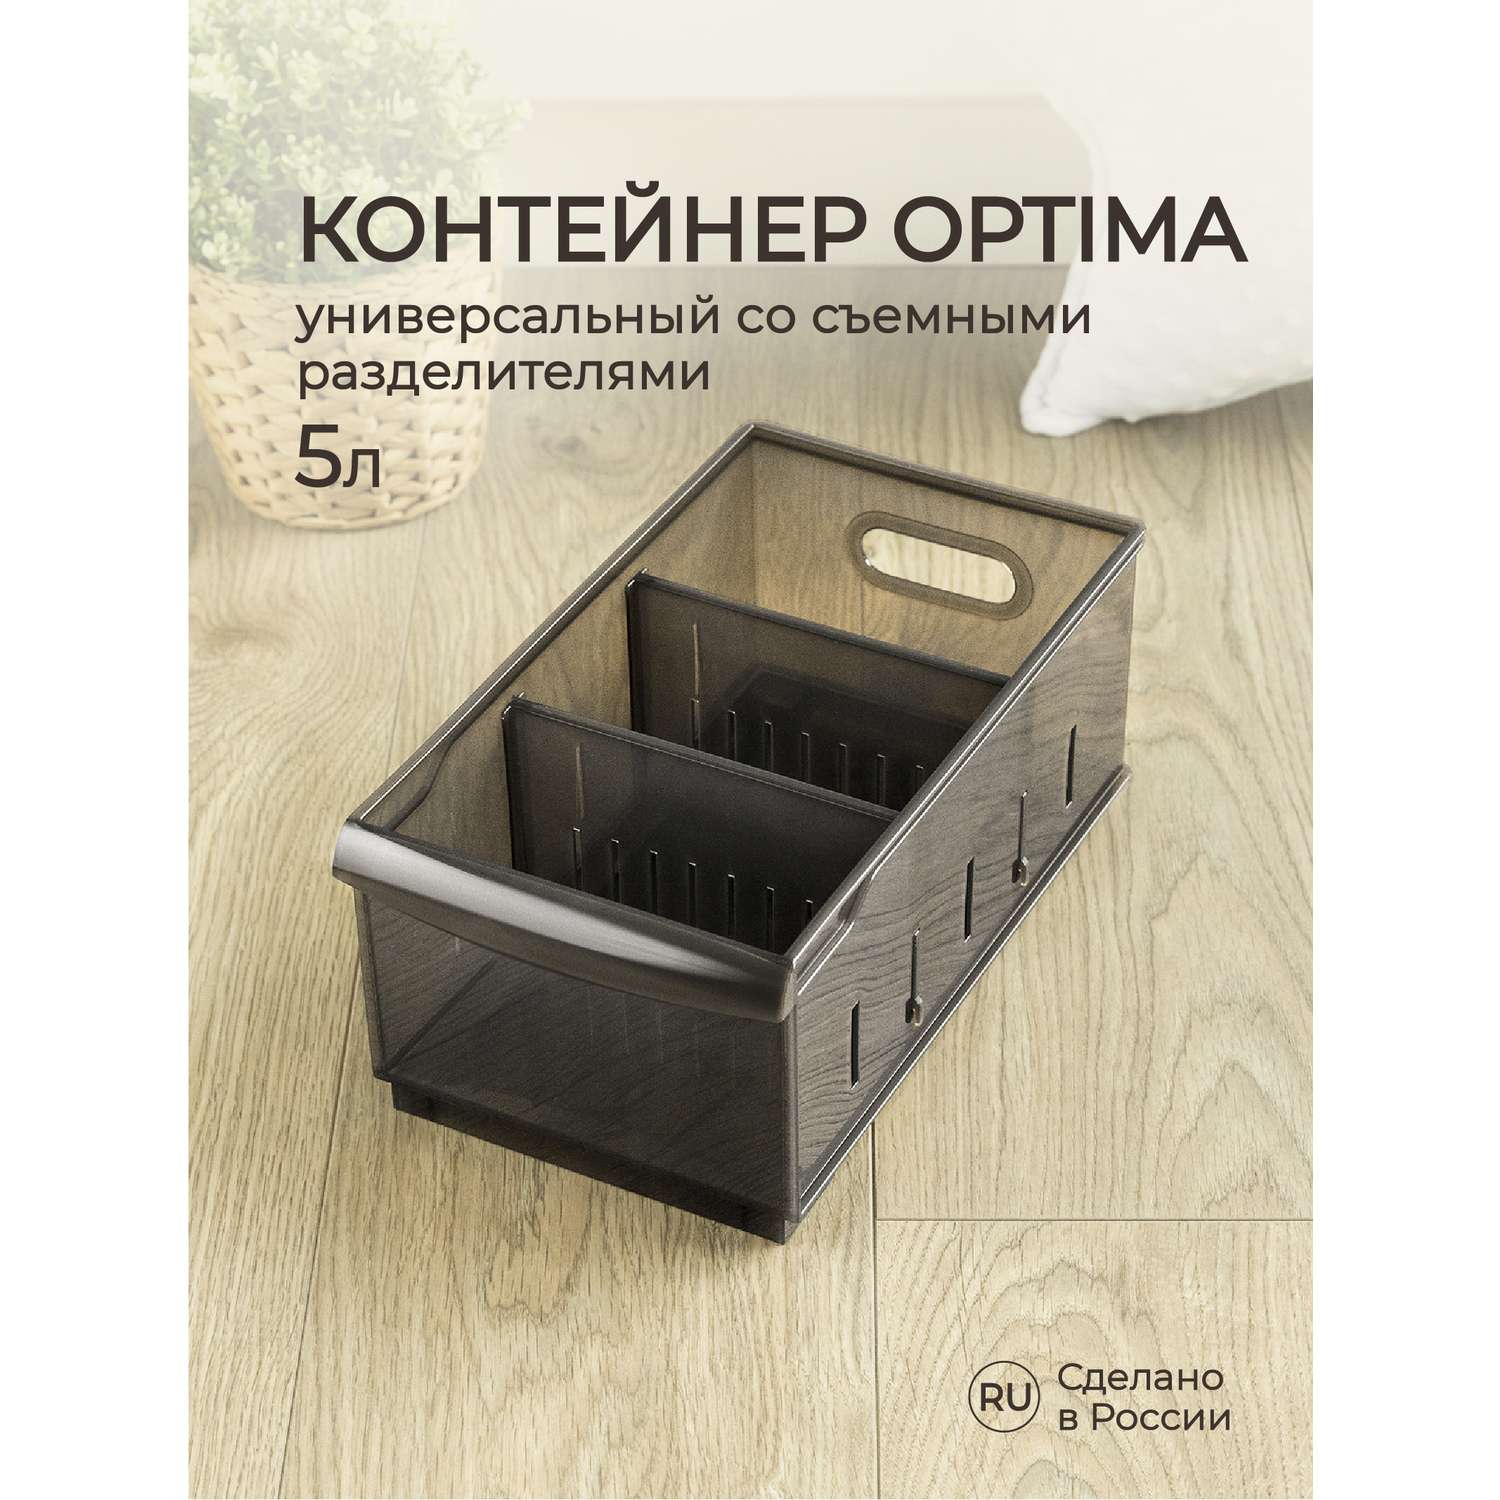 Органайзер Econova универсальный Optima 5 л 16.5х30.5х12.9 см коричневый - фото 1